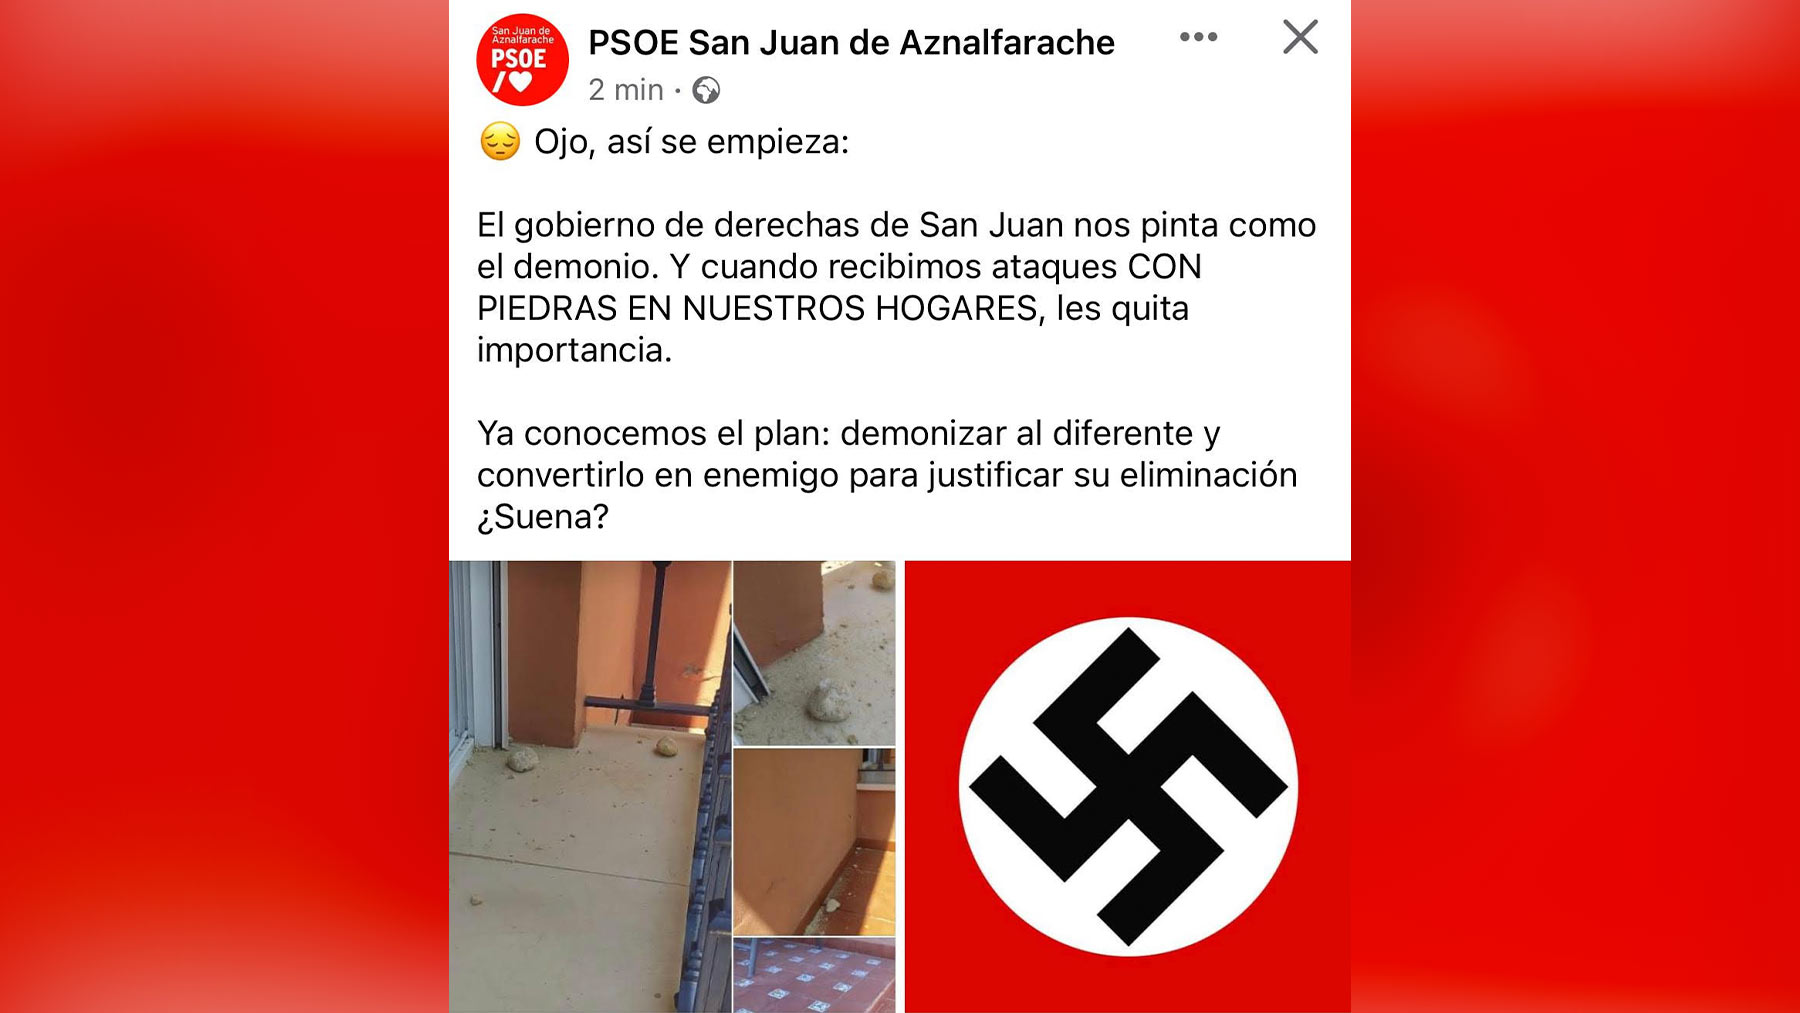 Mensaje publicado por el PSOE de San Juan de Aznalfarache en sus redes sociales.